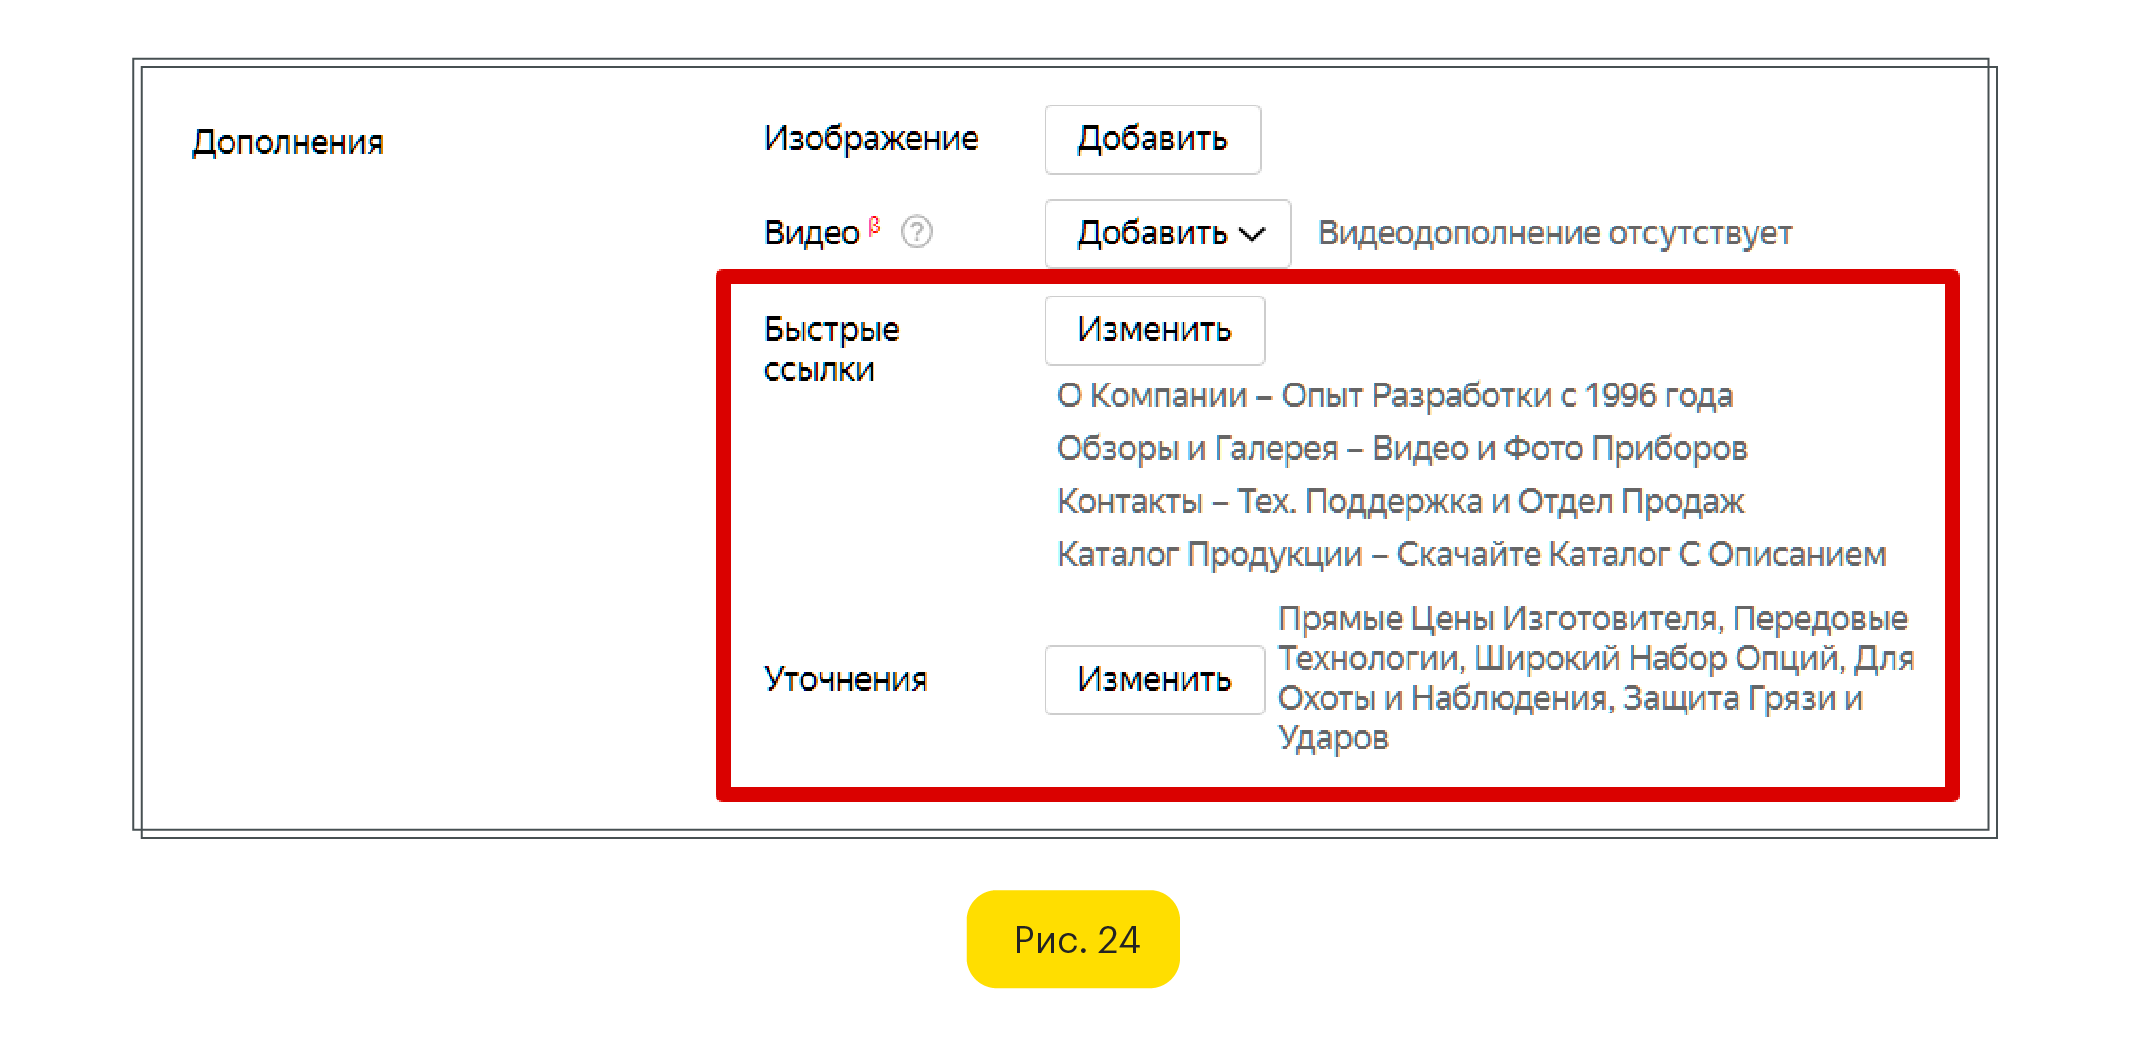 Быстрые ссылки и уточнения Яндекс Директ